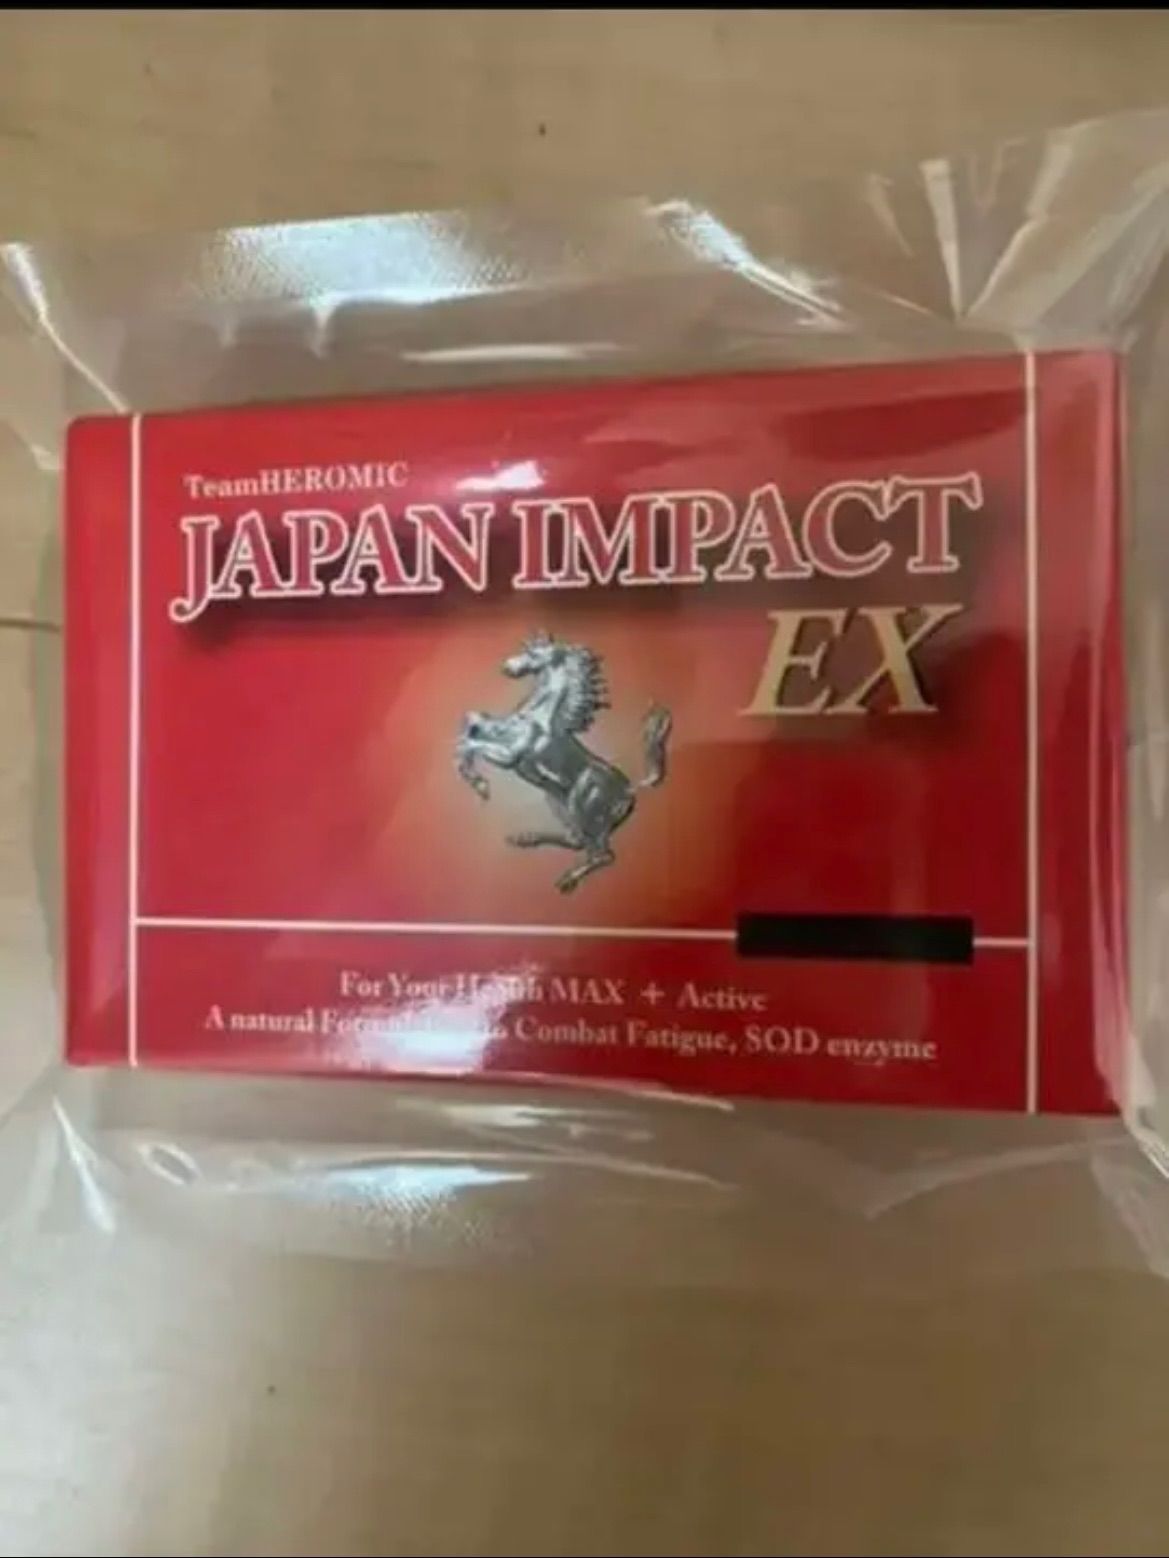 ヒロミックのジャパンインパクトEX - 健康用品